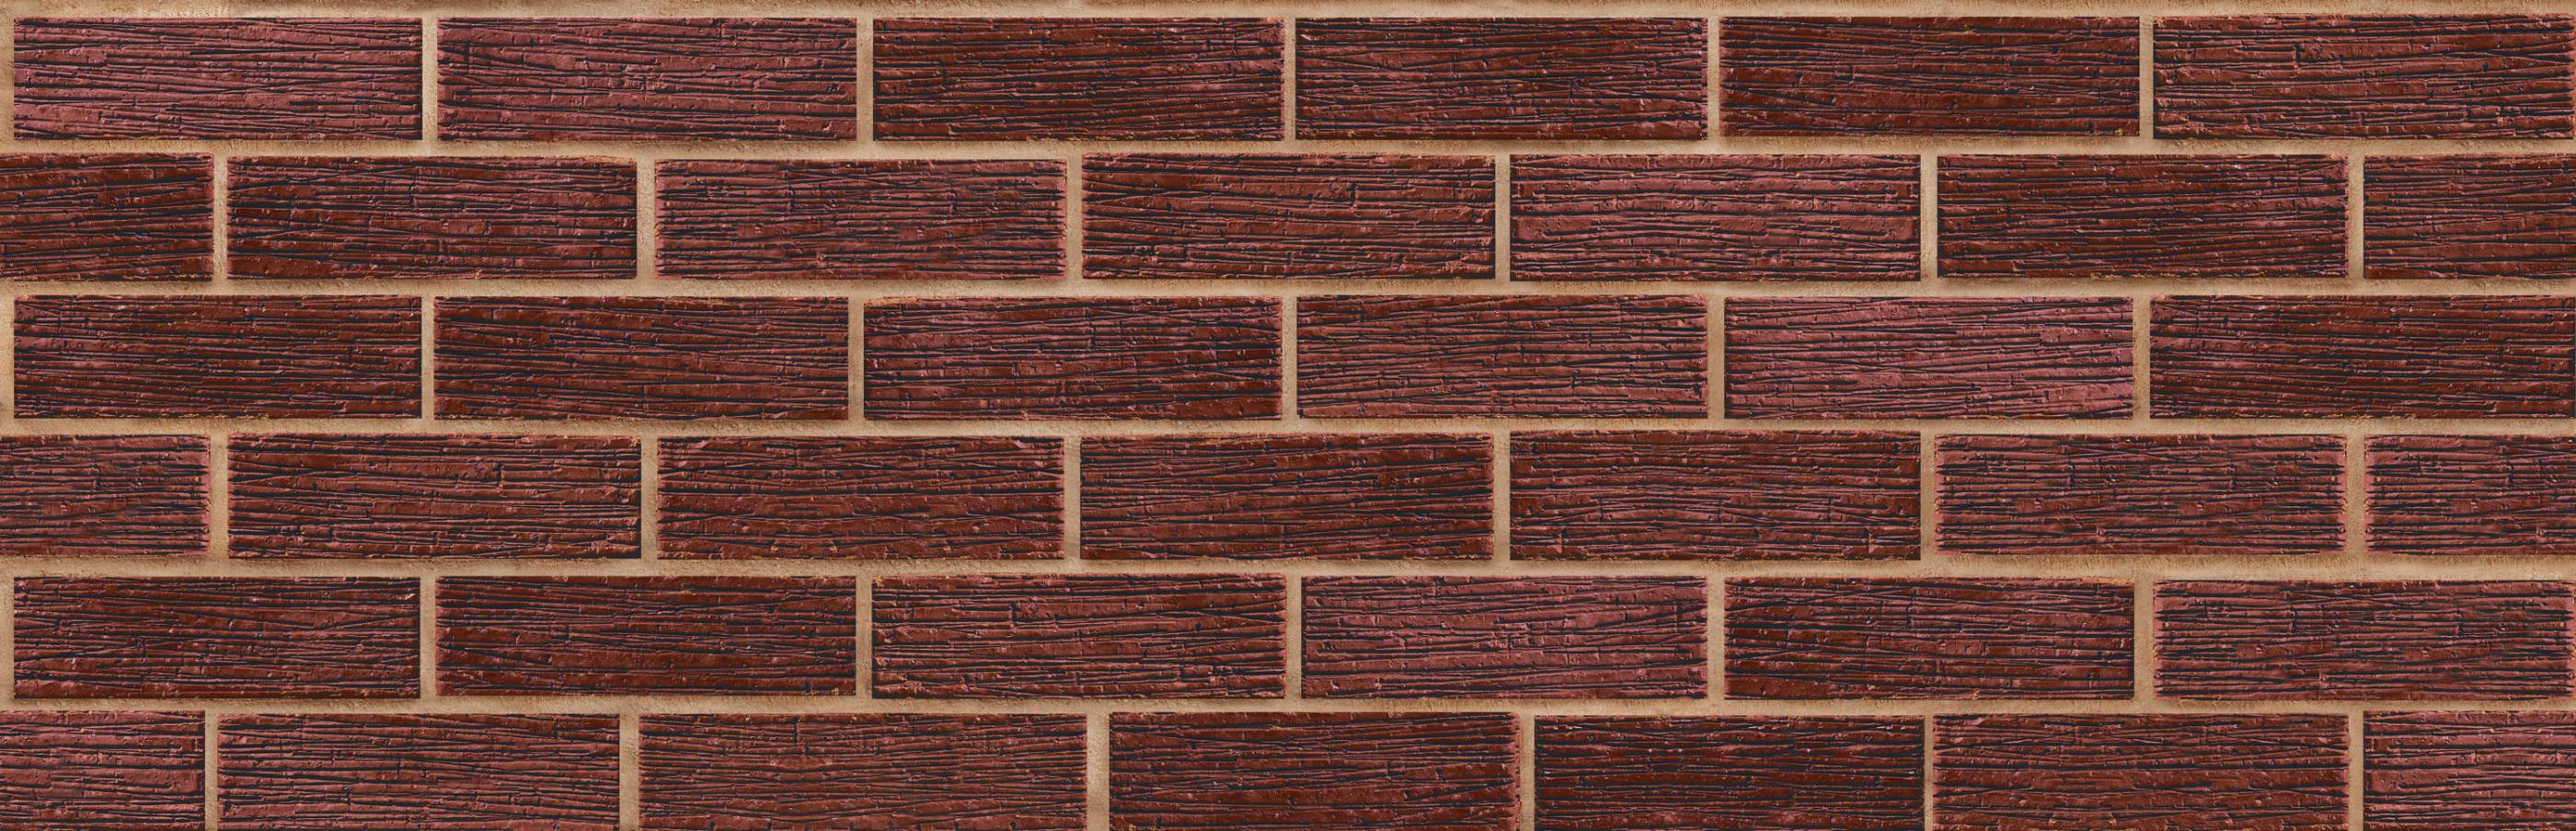 Carlton Crigglestone Red Clay Brick